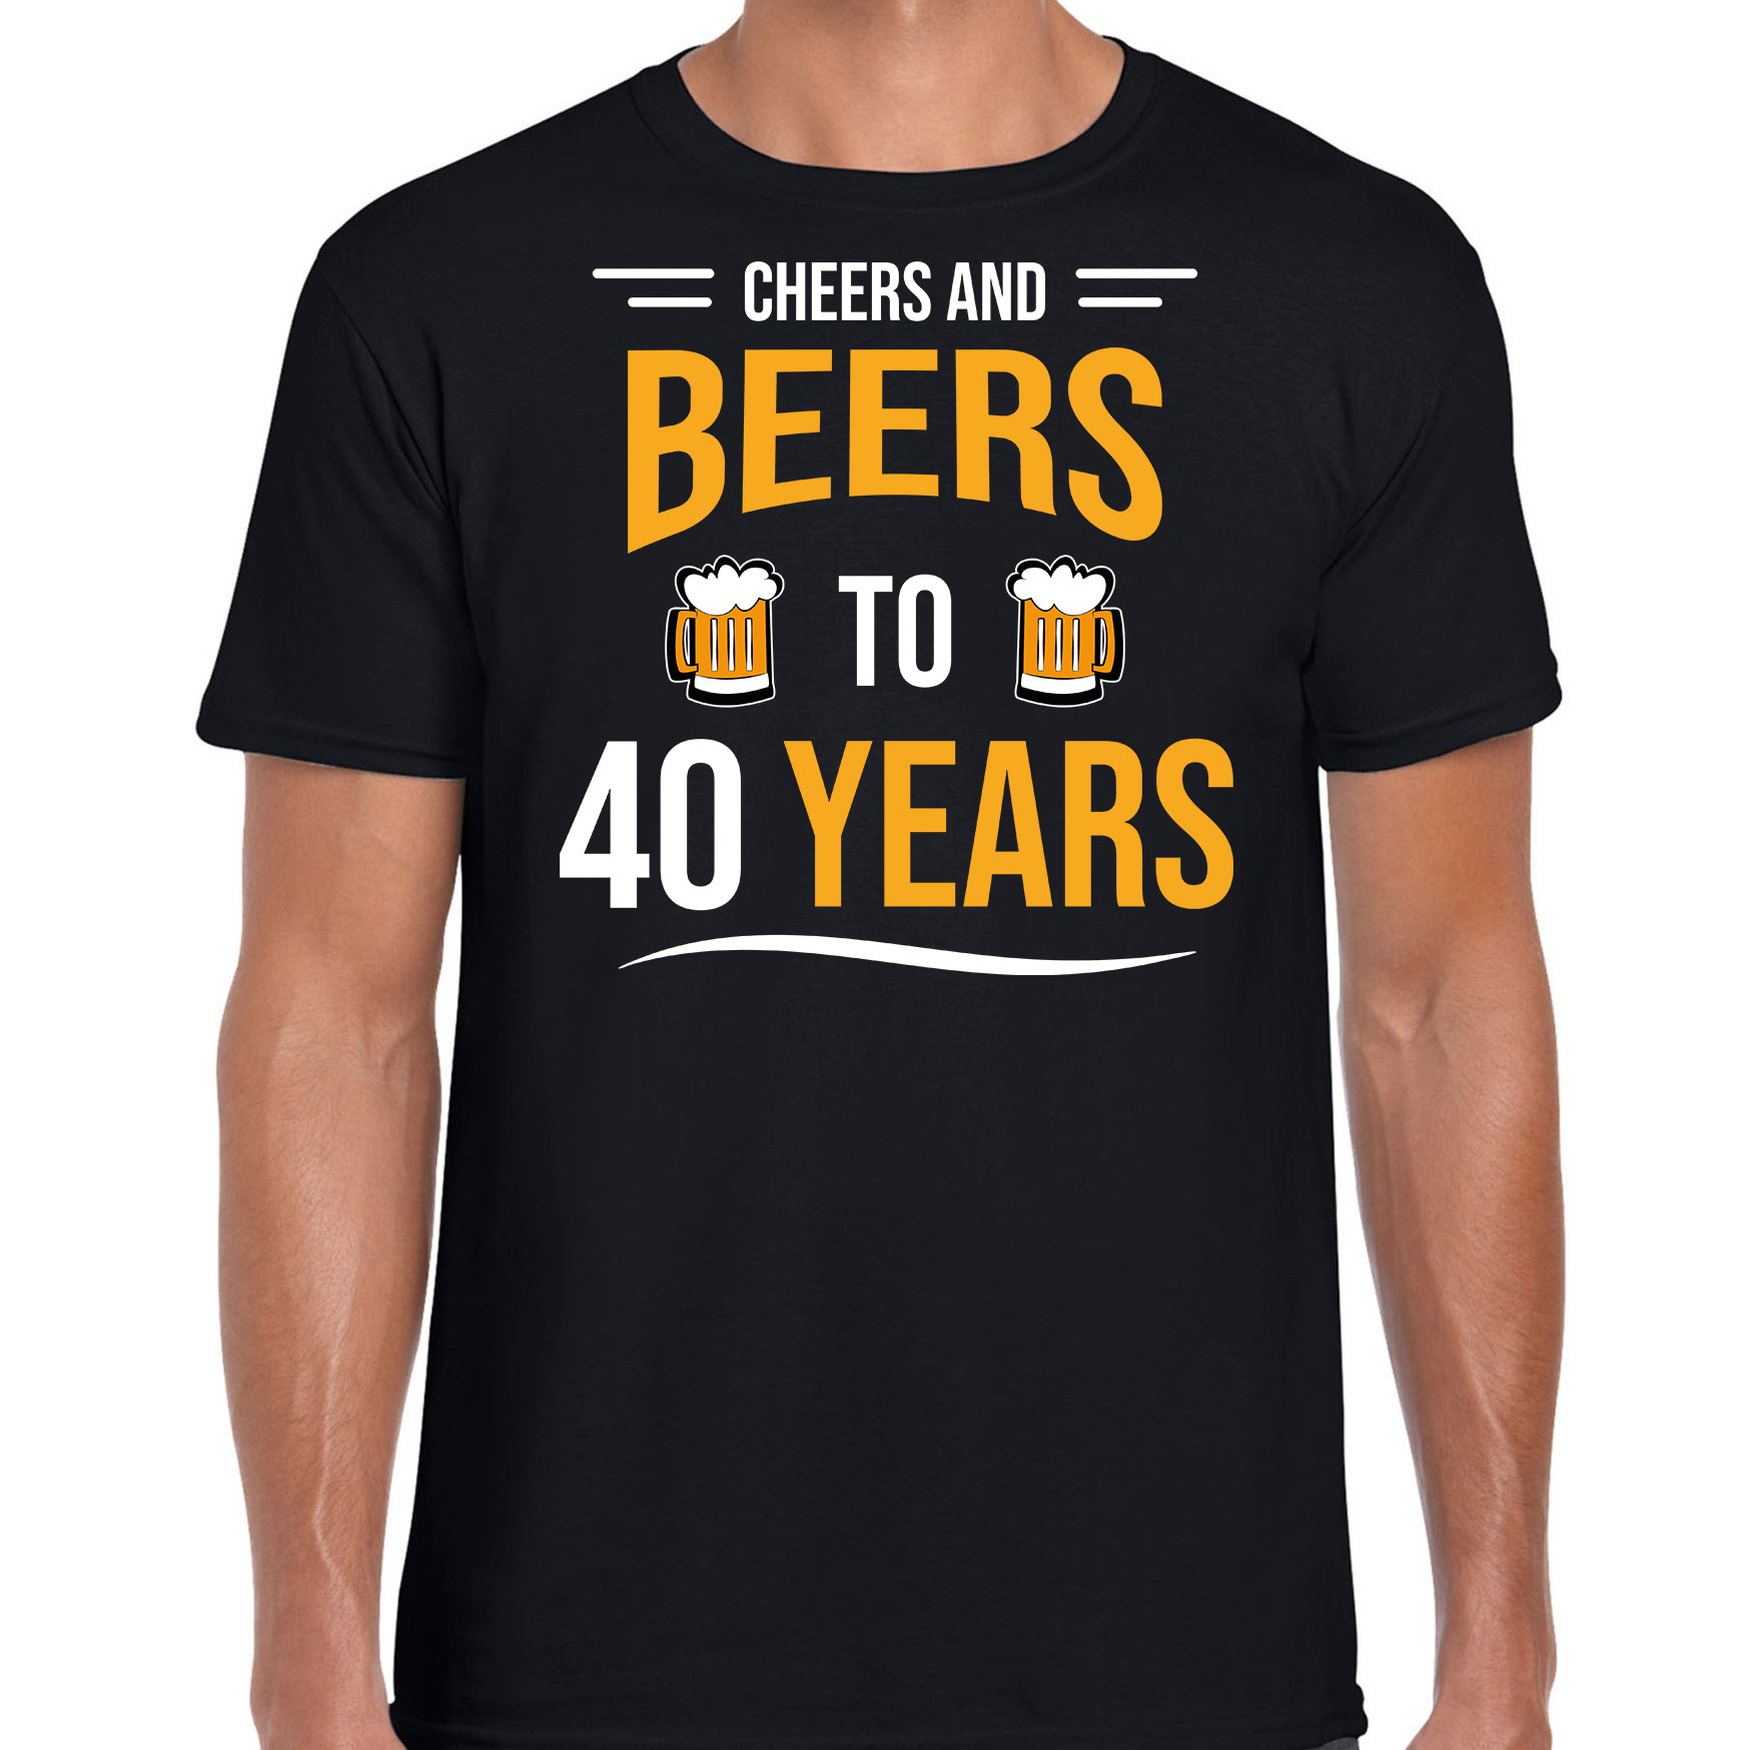 Cheers and beers 40 jaar verjaardag cadeau t-shirt zwart voor heren